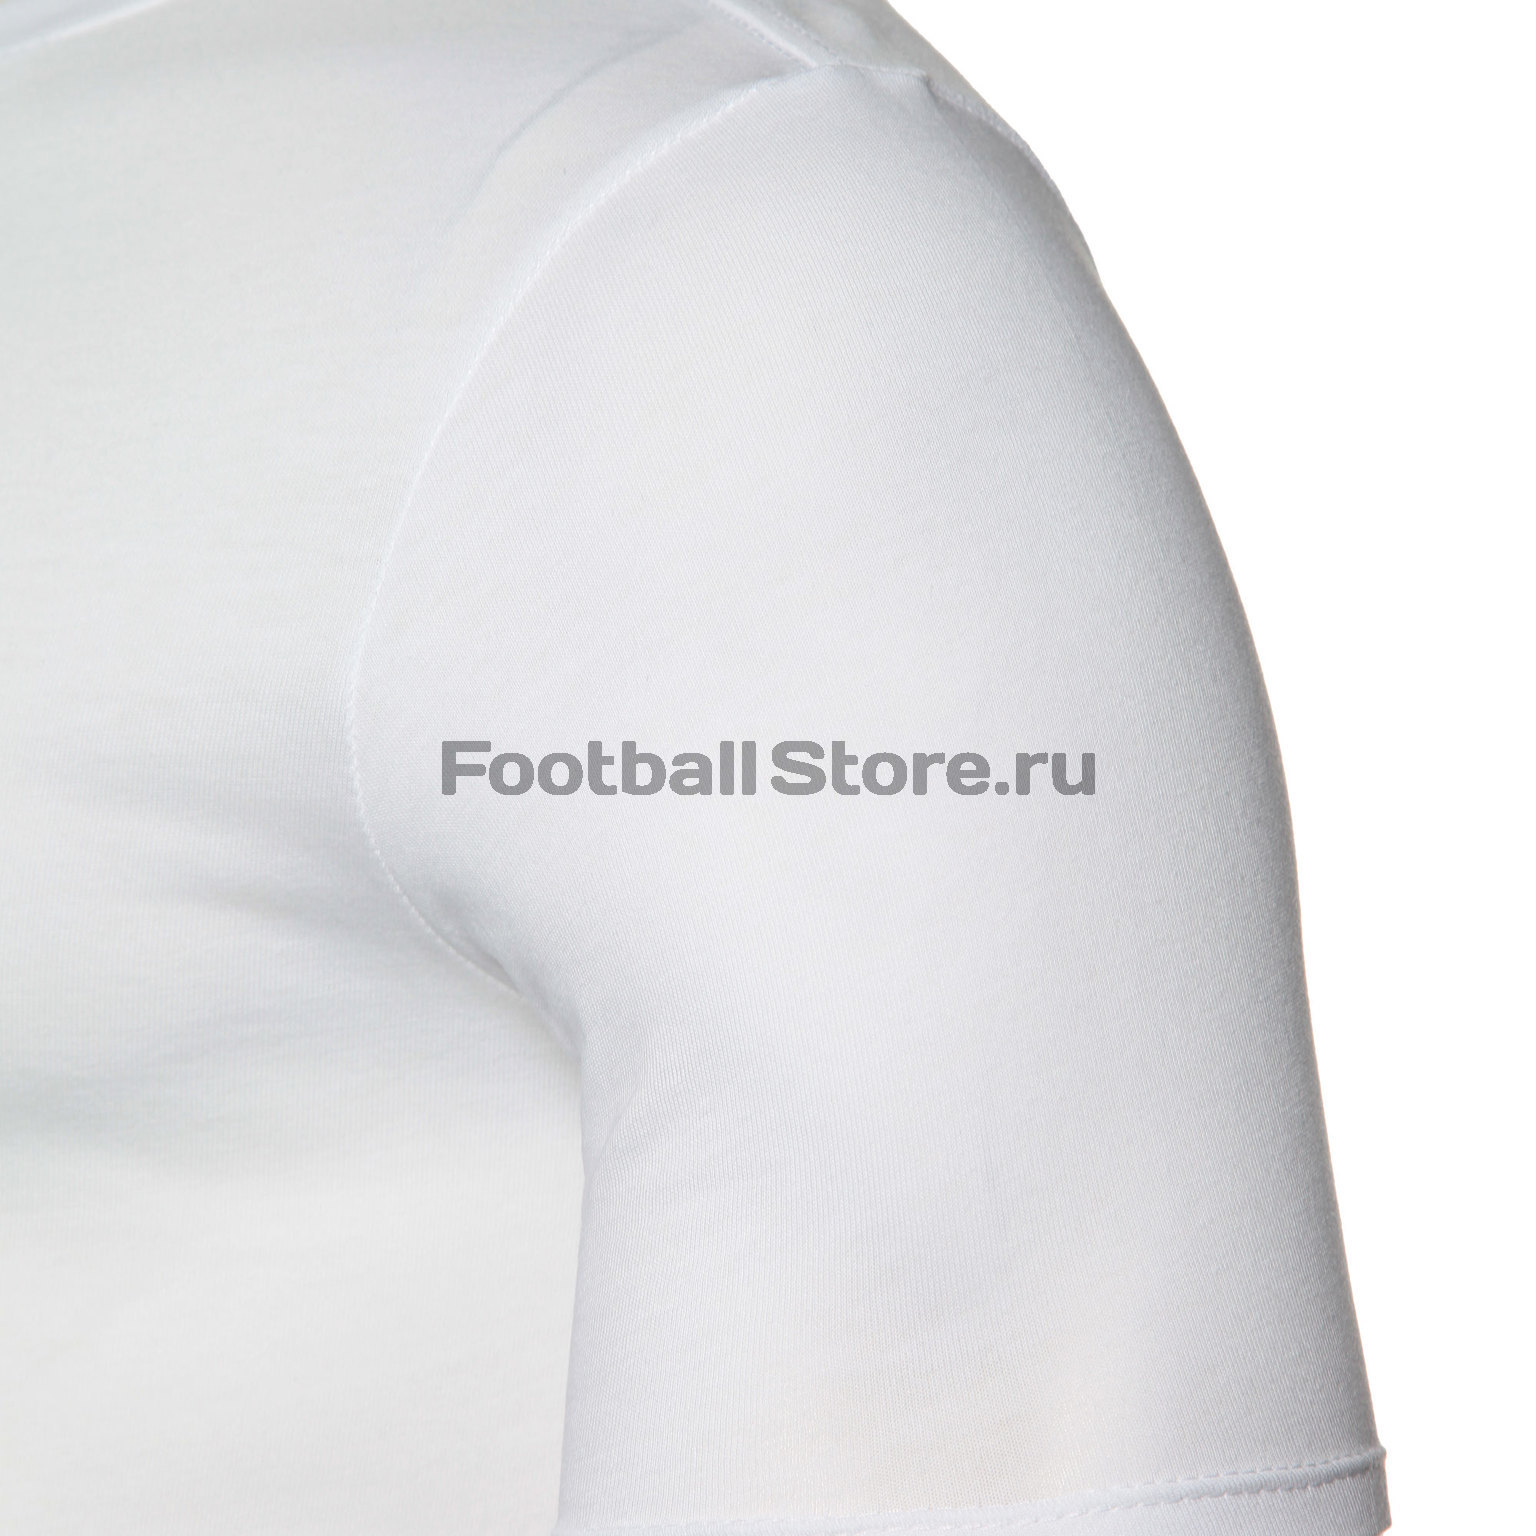 Футболка Nike Ronaldinho AV6342-100